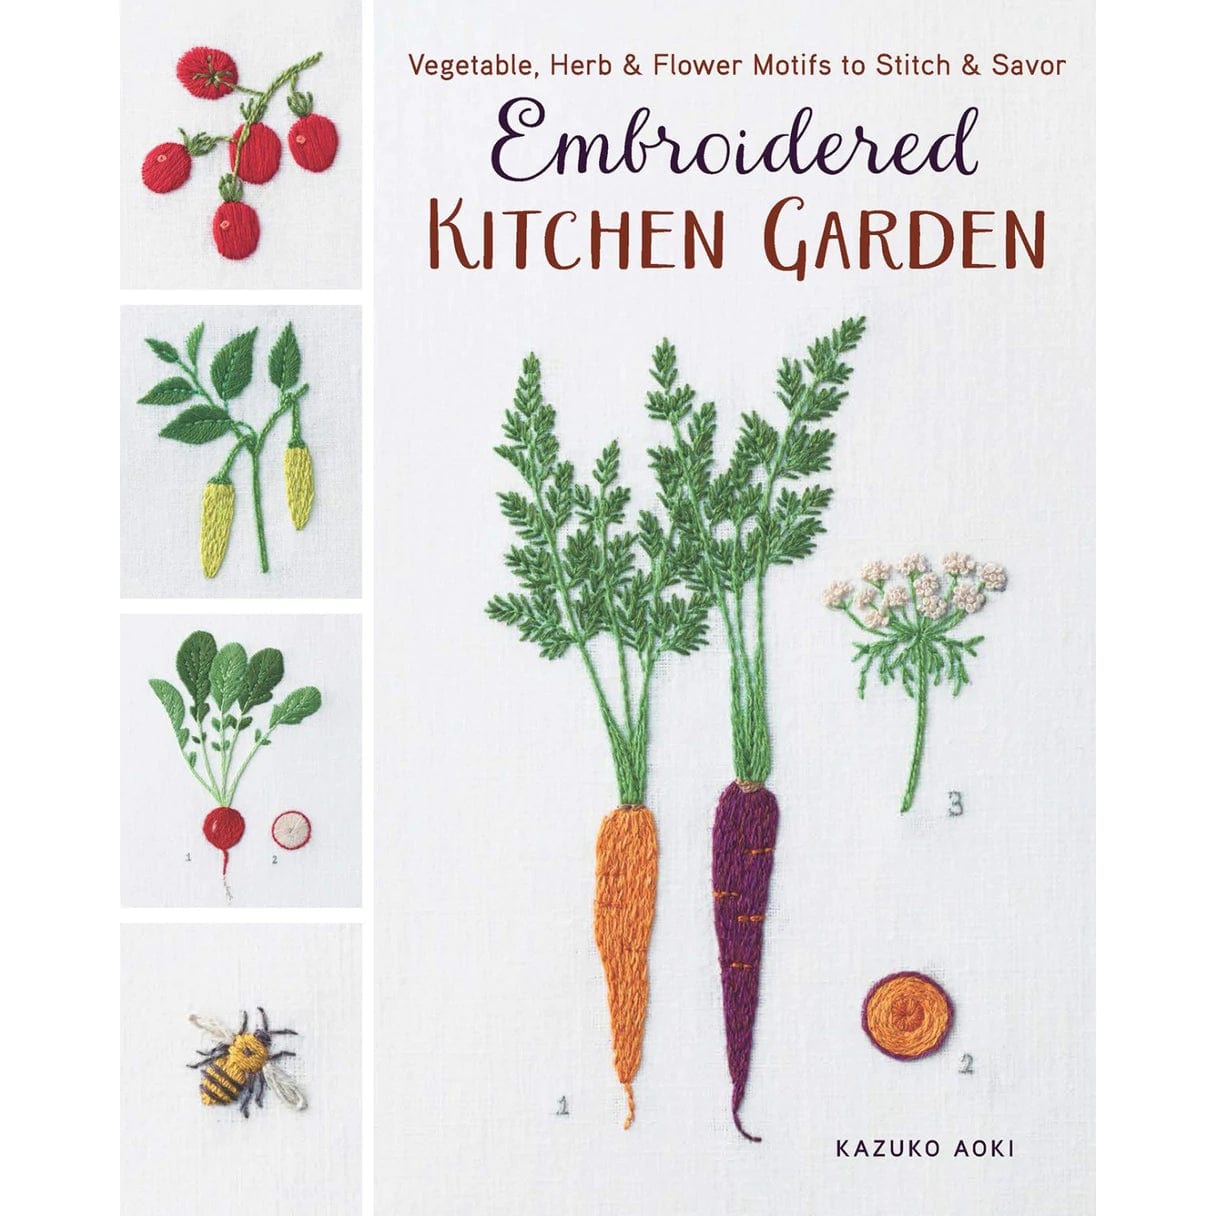 Embroidered Kitchen Garden: Vegetable, Herb & Flower Motifs to Stitch & Savor by Kazuko Aoki